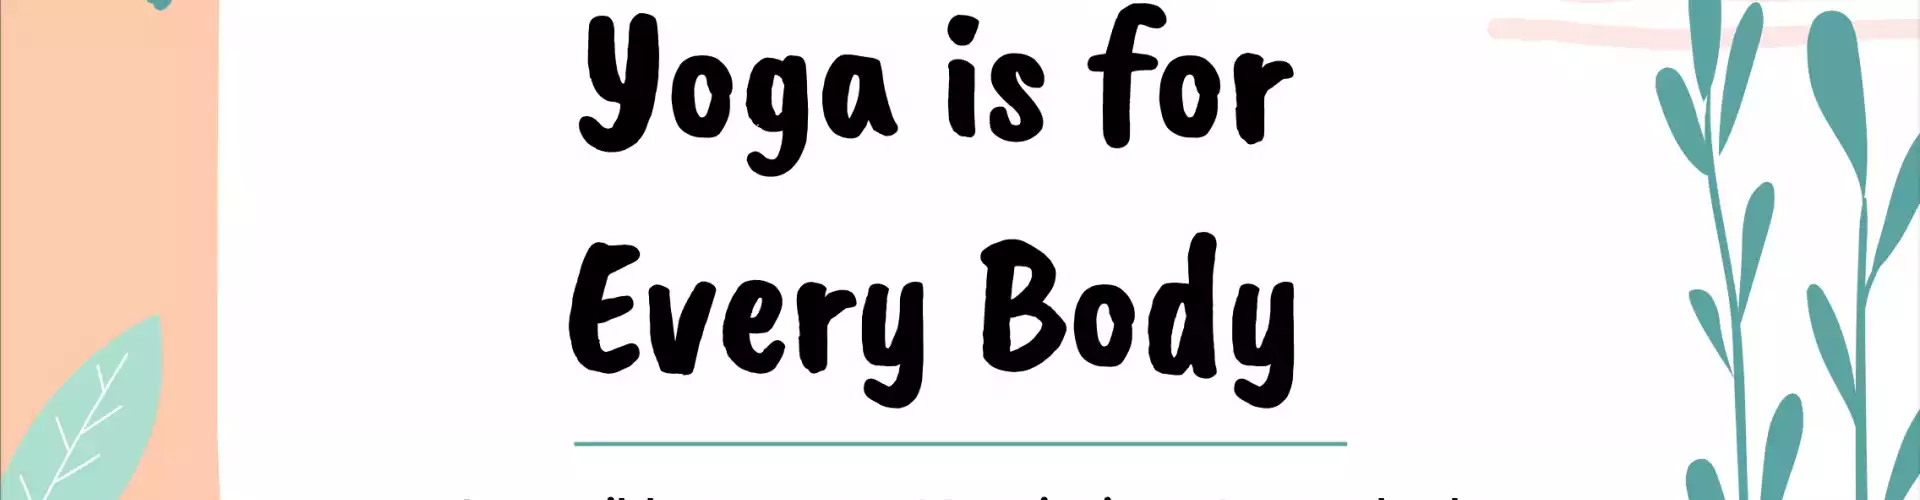 El yoga es para todos: movimiento accesible para revitalizar el cuerpo, el corazón y la mente